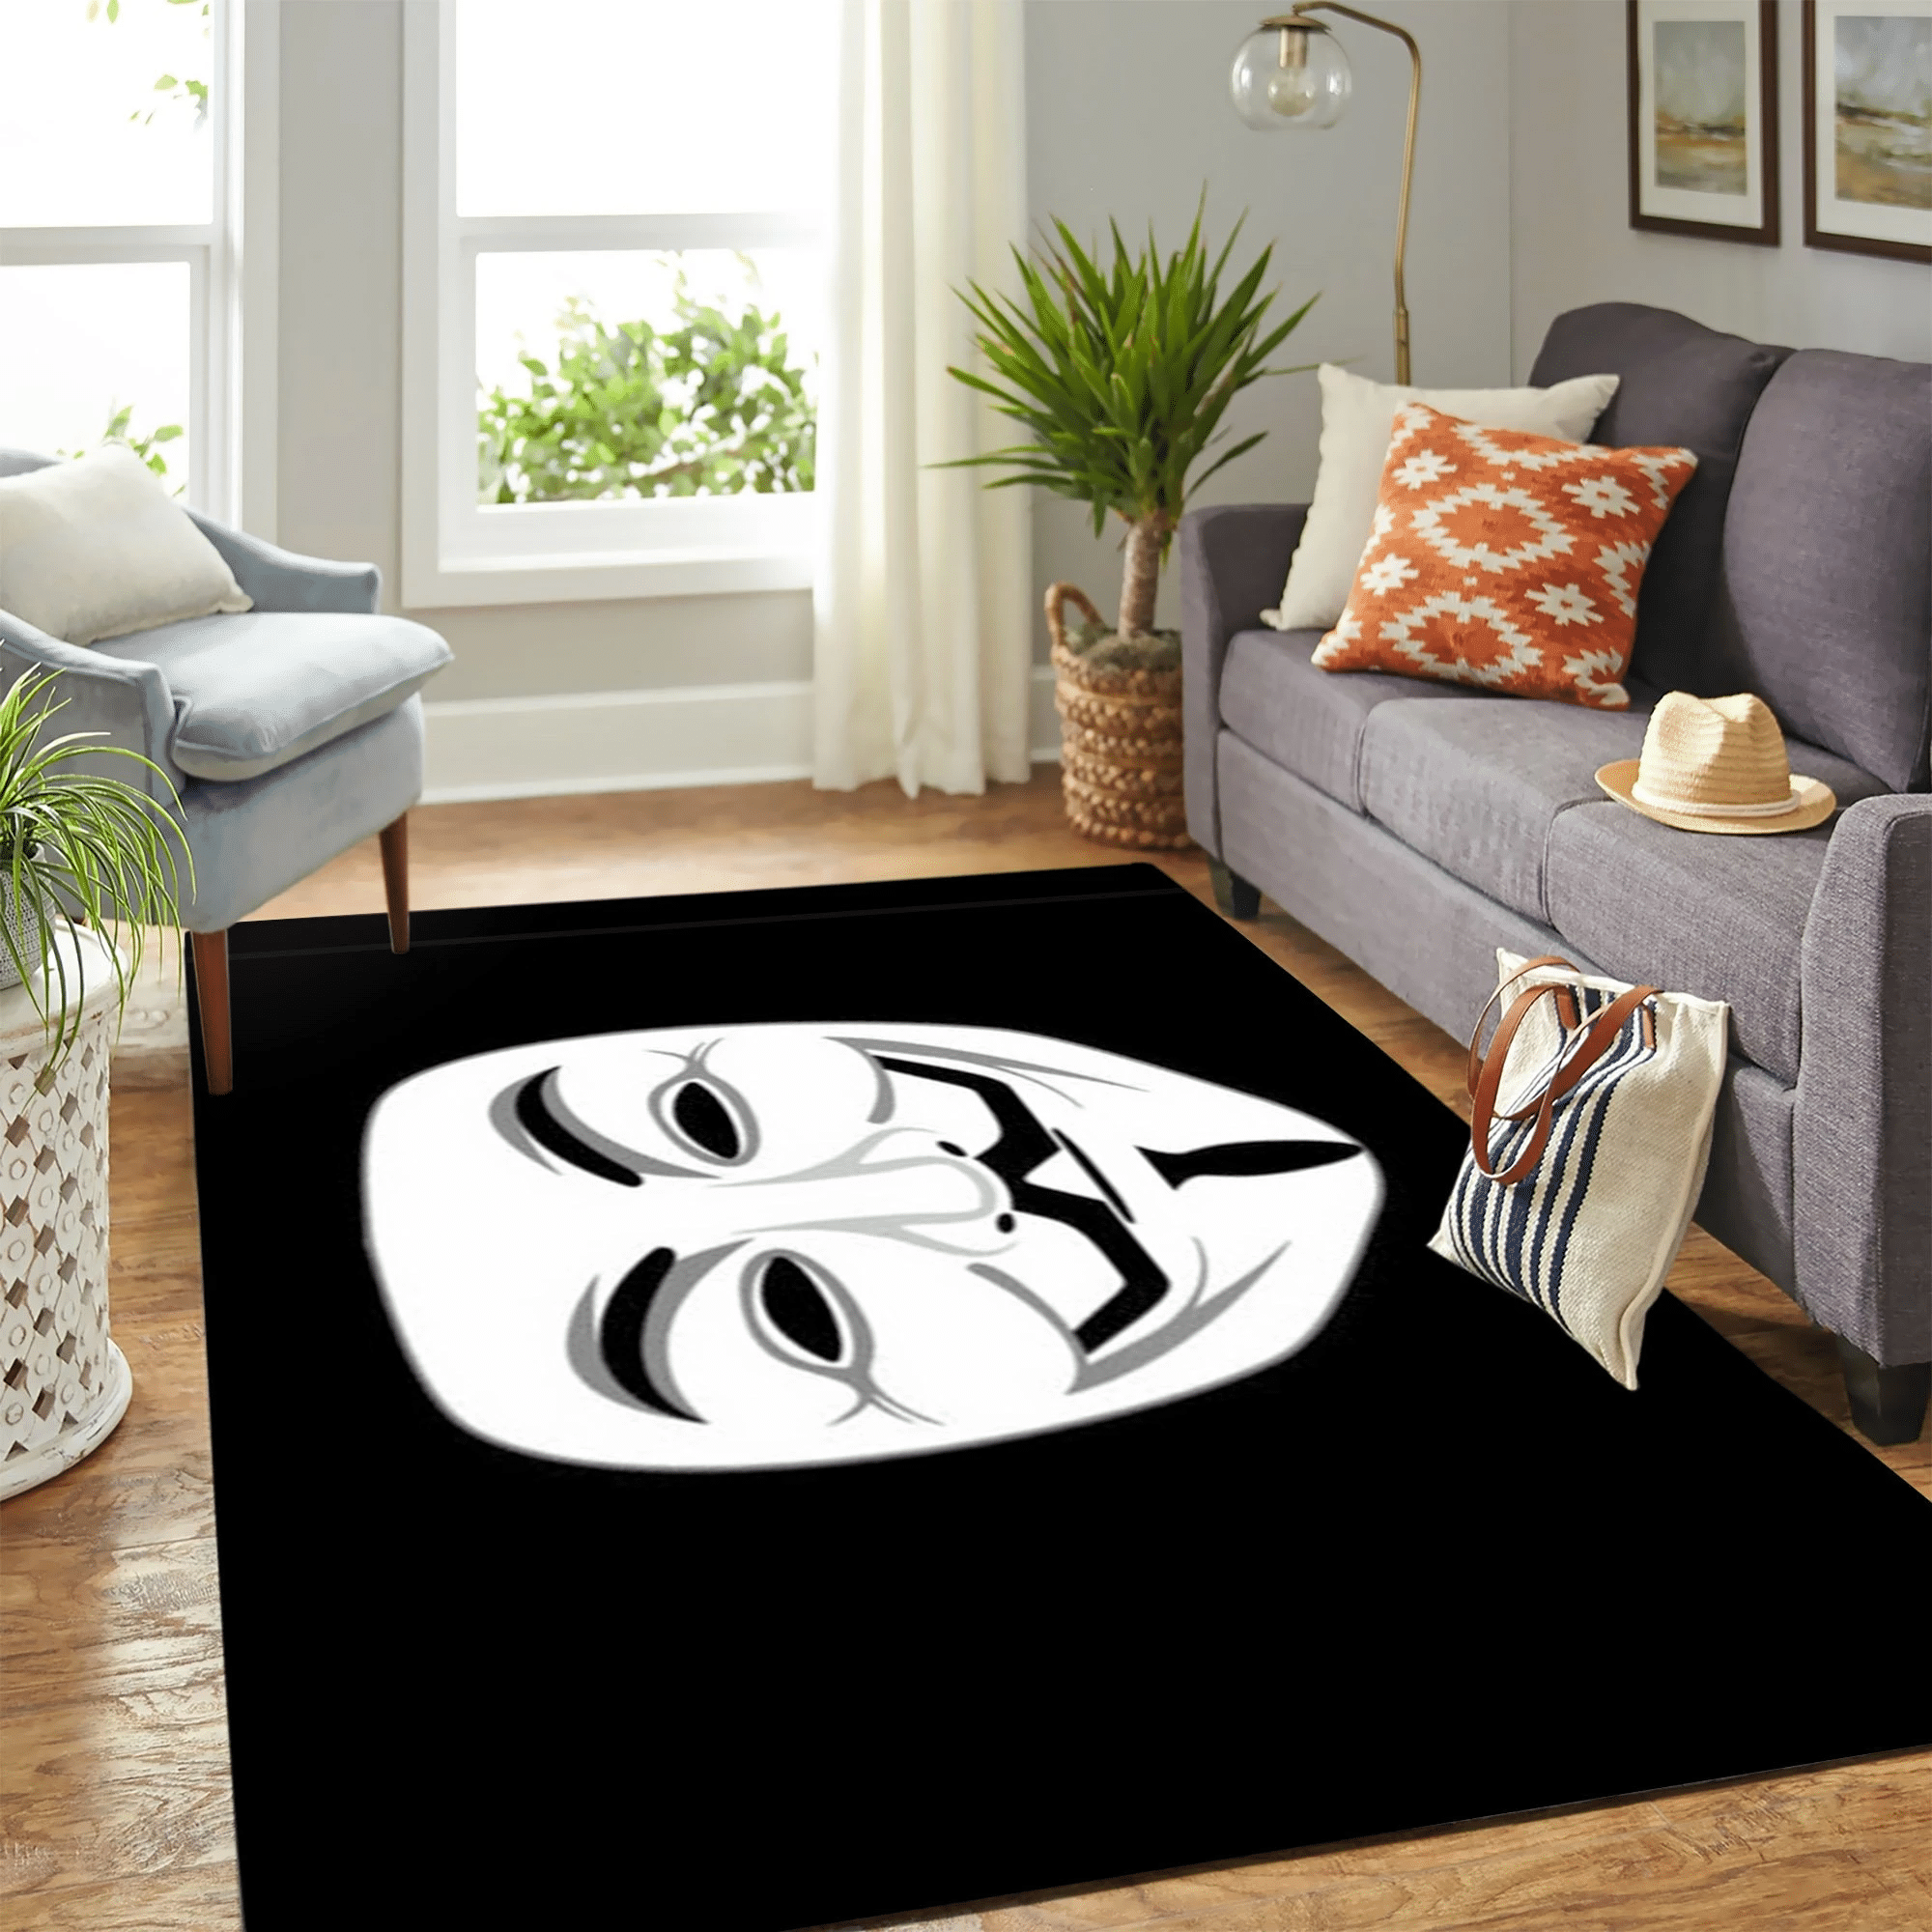 Anonymos Carpet Floor Area Rug Chrismas Gift - Indoor Outdoor Rugs 1